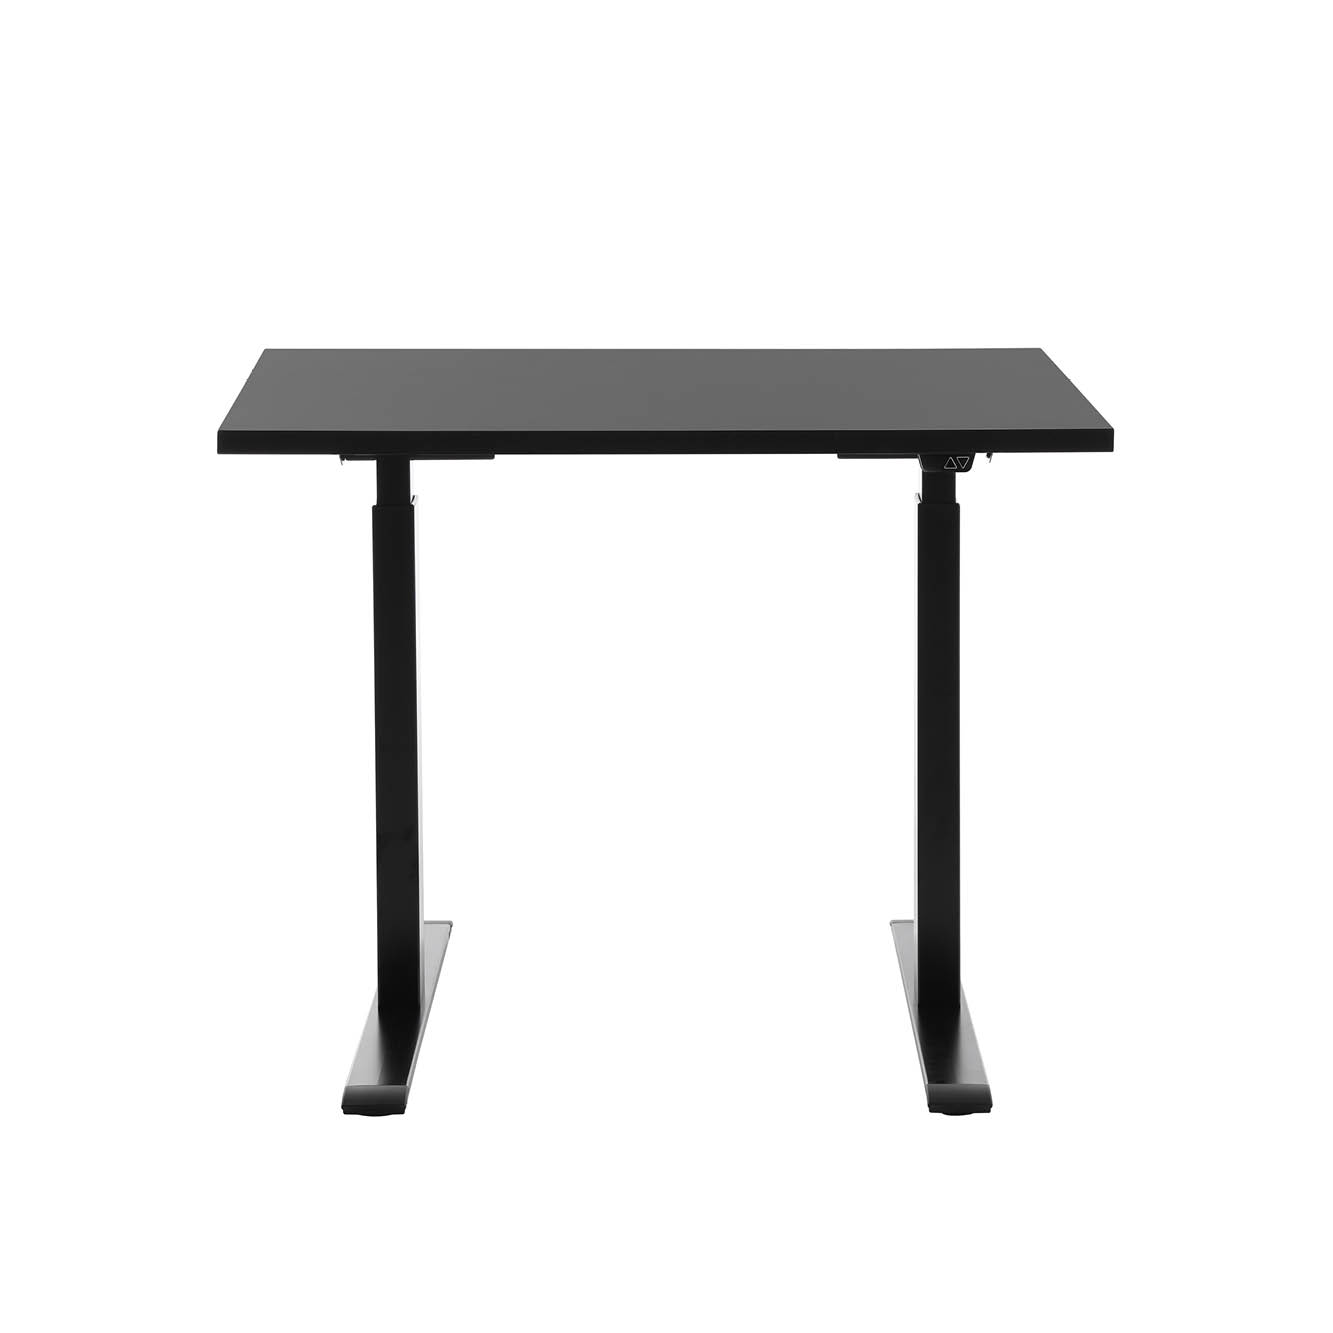 Schreibtisch Topstar Ergo E-Table höhenverstellbar 100 x 60 cm - schwarz, schwarz